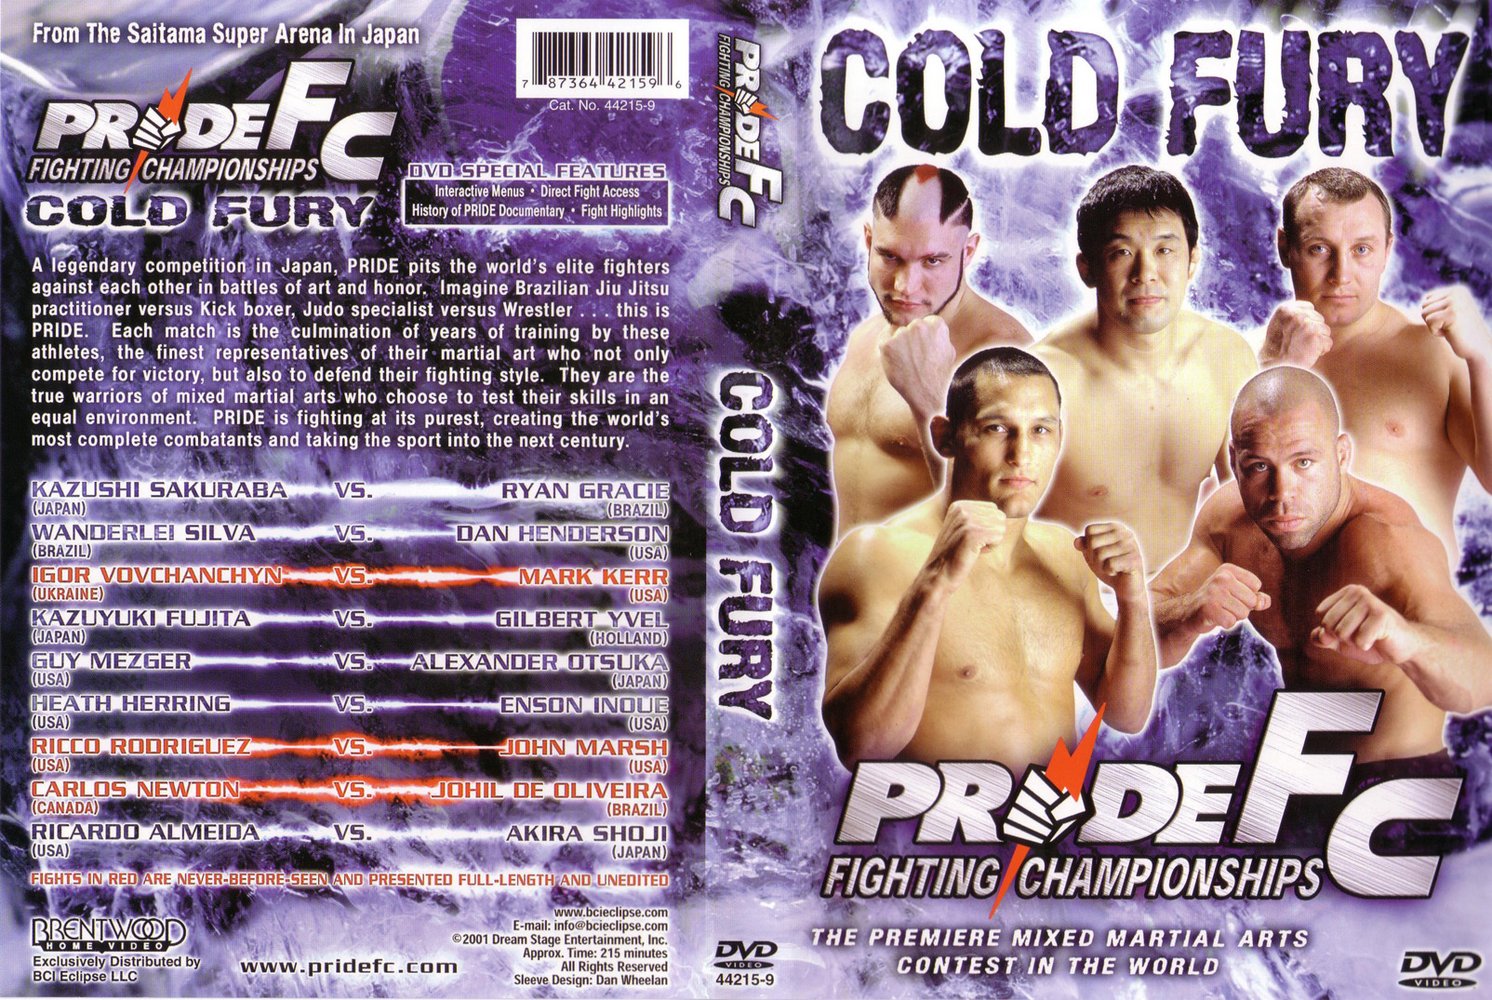 Jaquette DVD Pride Fc cold fury